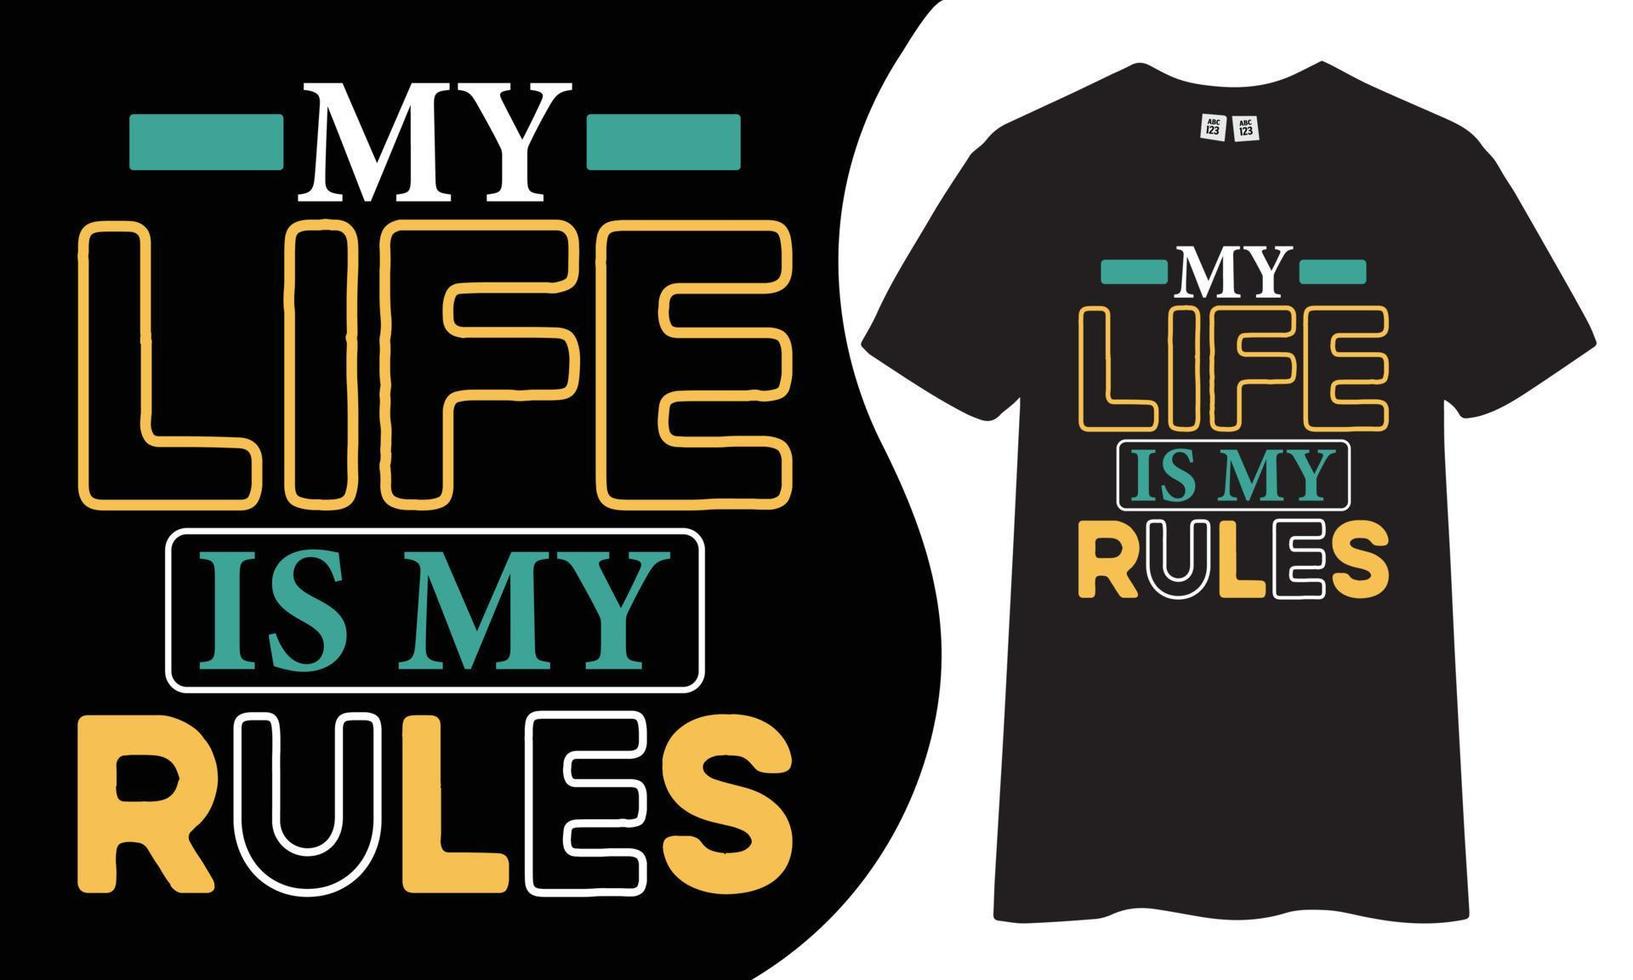 motivierendes und inspirierendes T-Shirt-Design. Mein Leben ist meine Regeln zitiert T-Shirt-Design. vektor